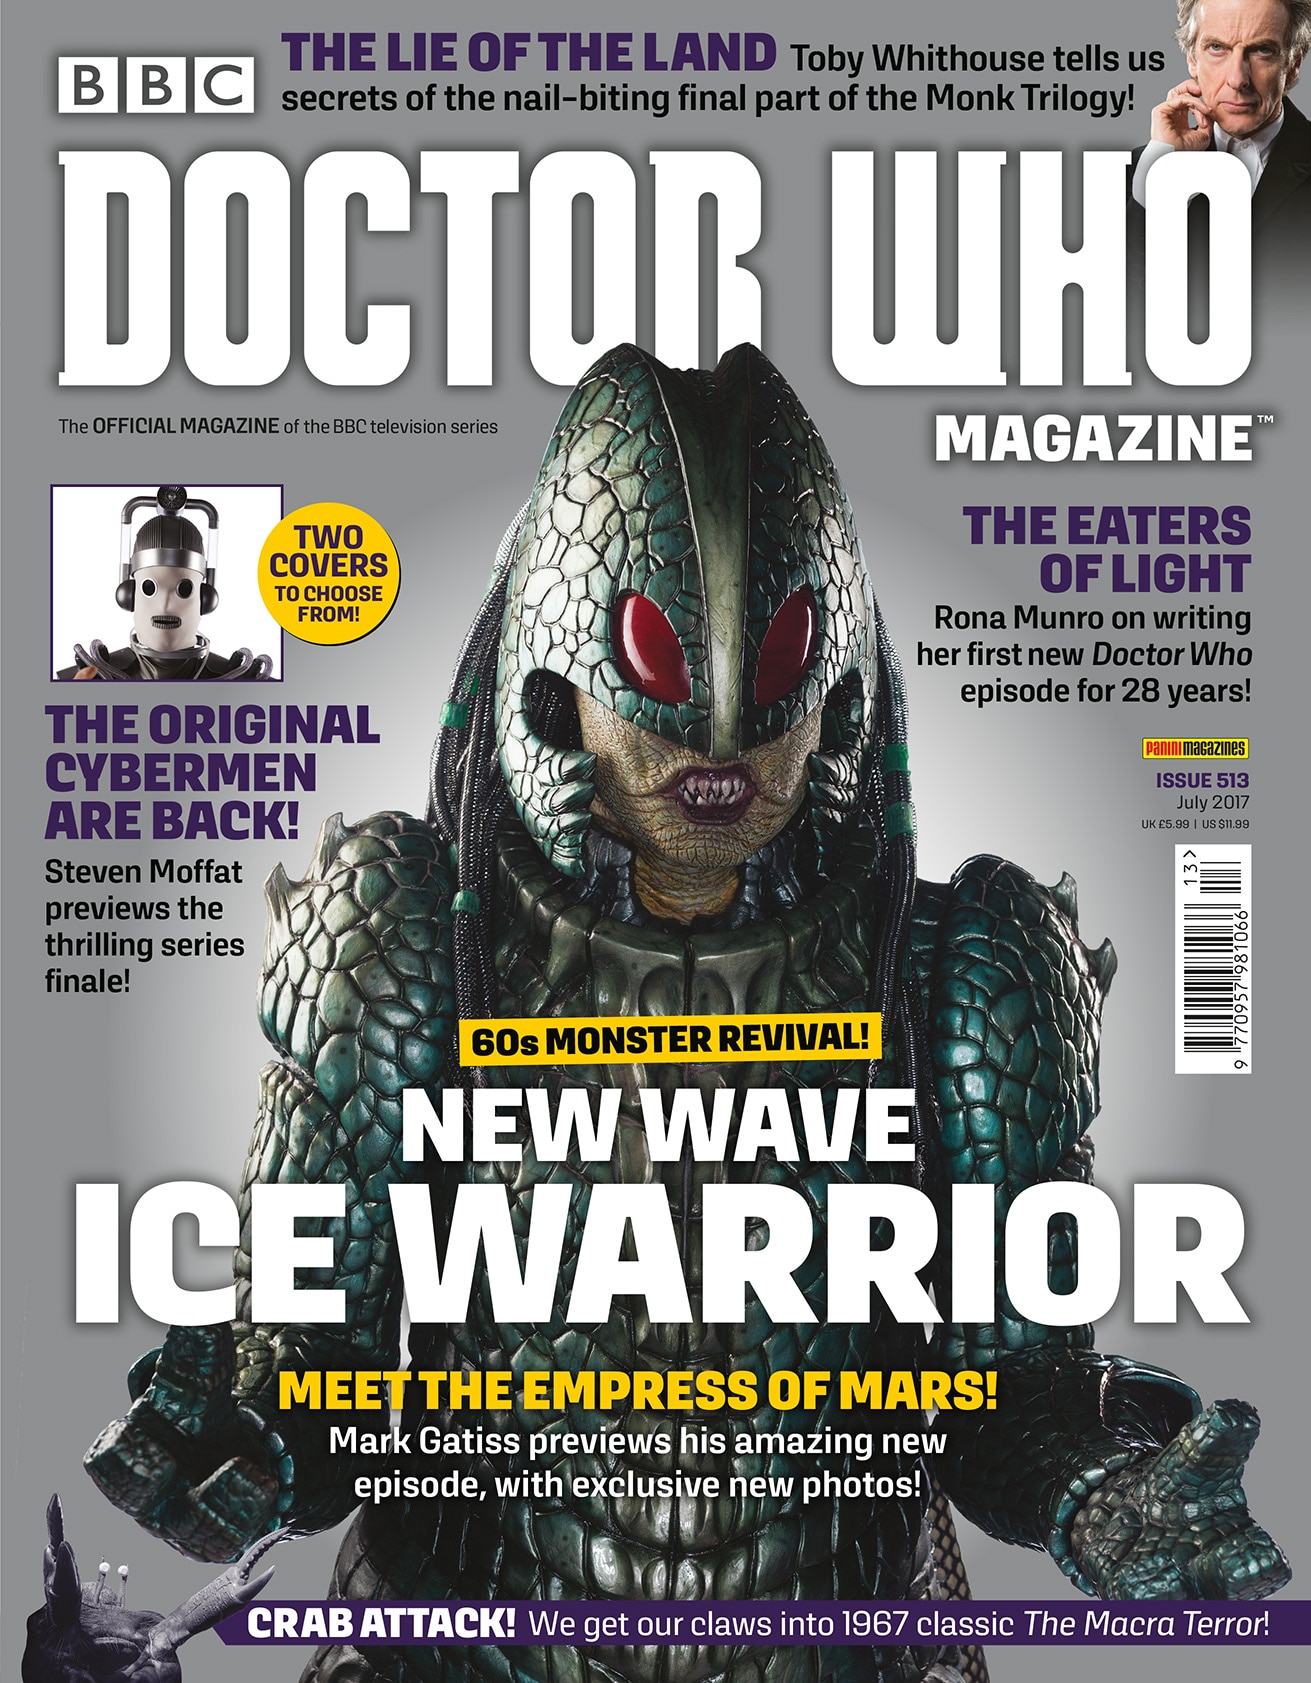 Ice Warrior magazine cover